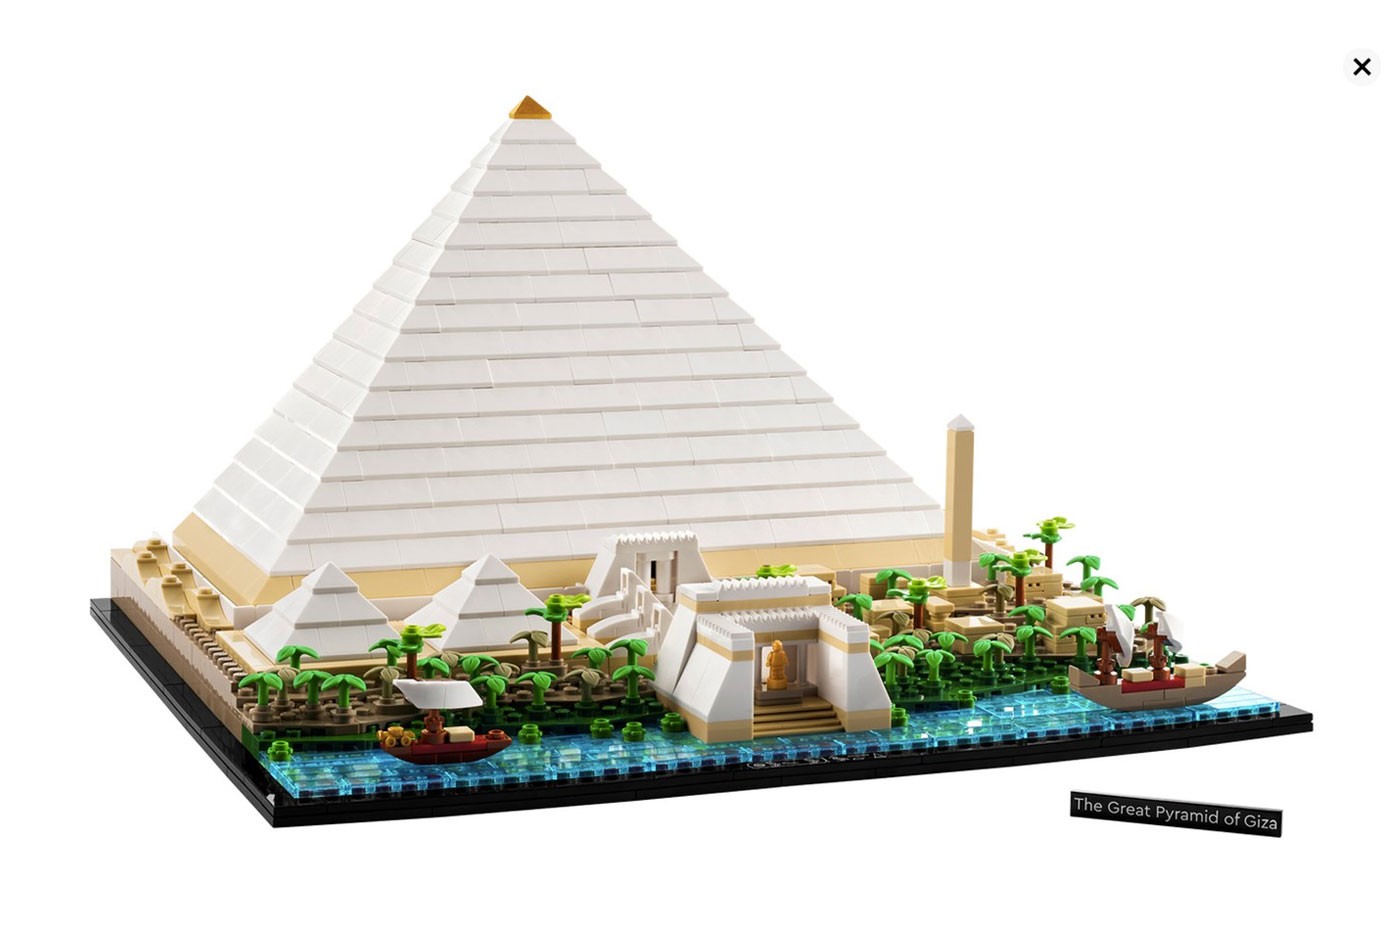 Lego представила набор для создания копии пирамиды в Гизе (фото 3)